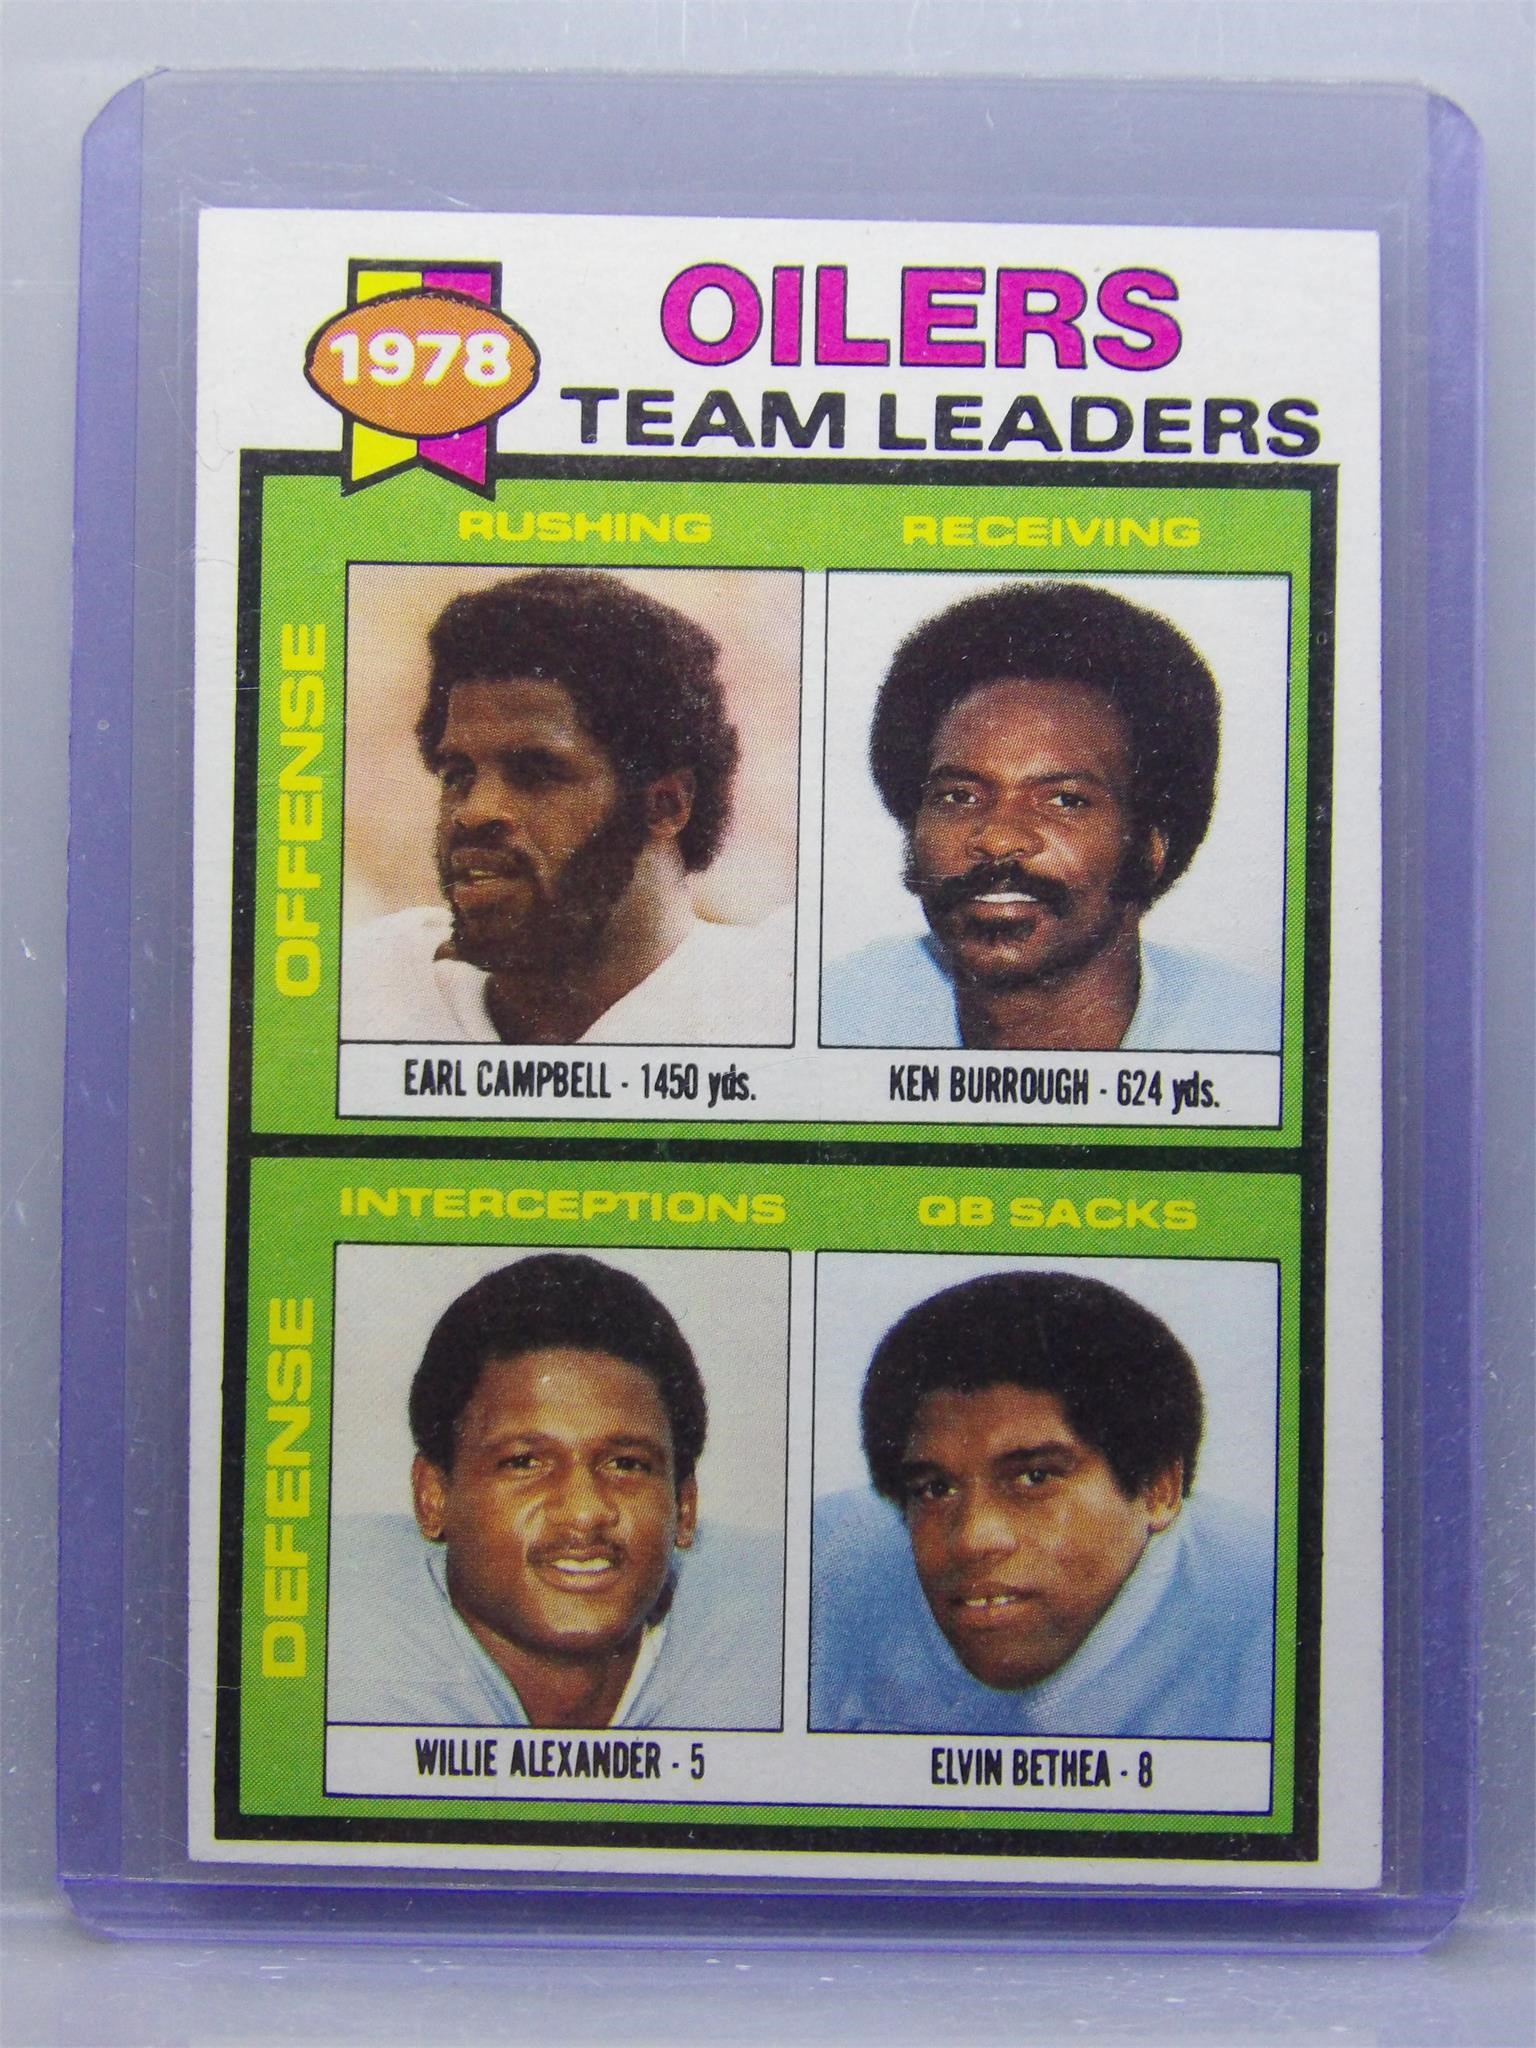 Earl Campbell 1979 Topps '78 Oilers Team Leaders